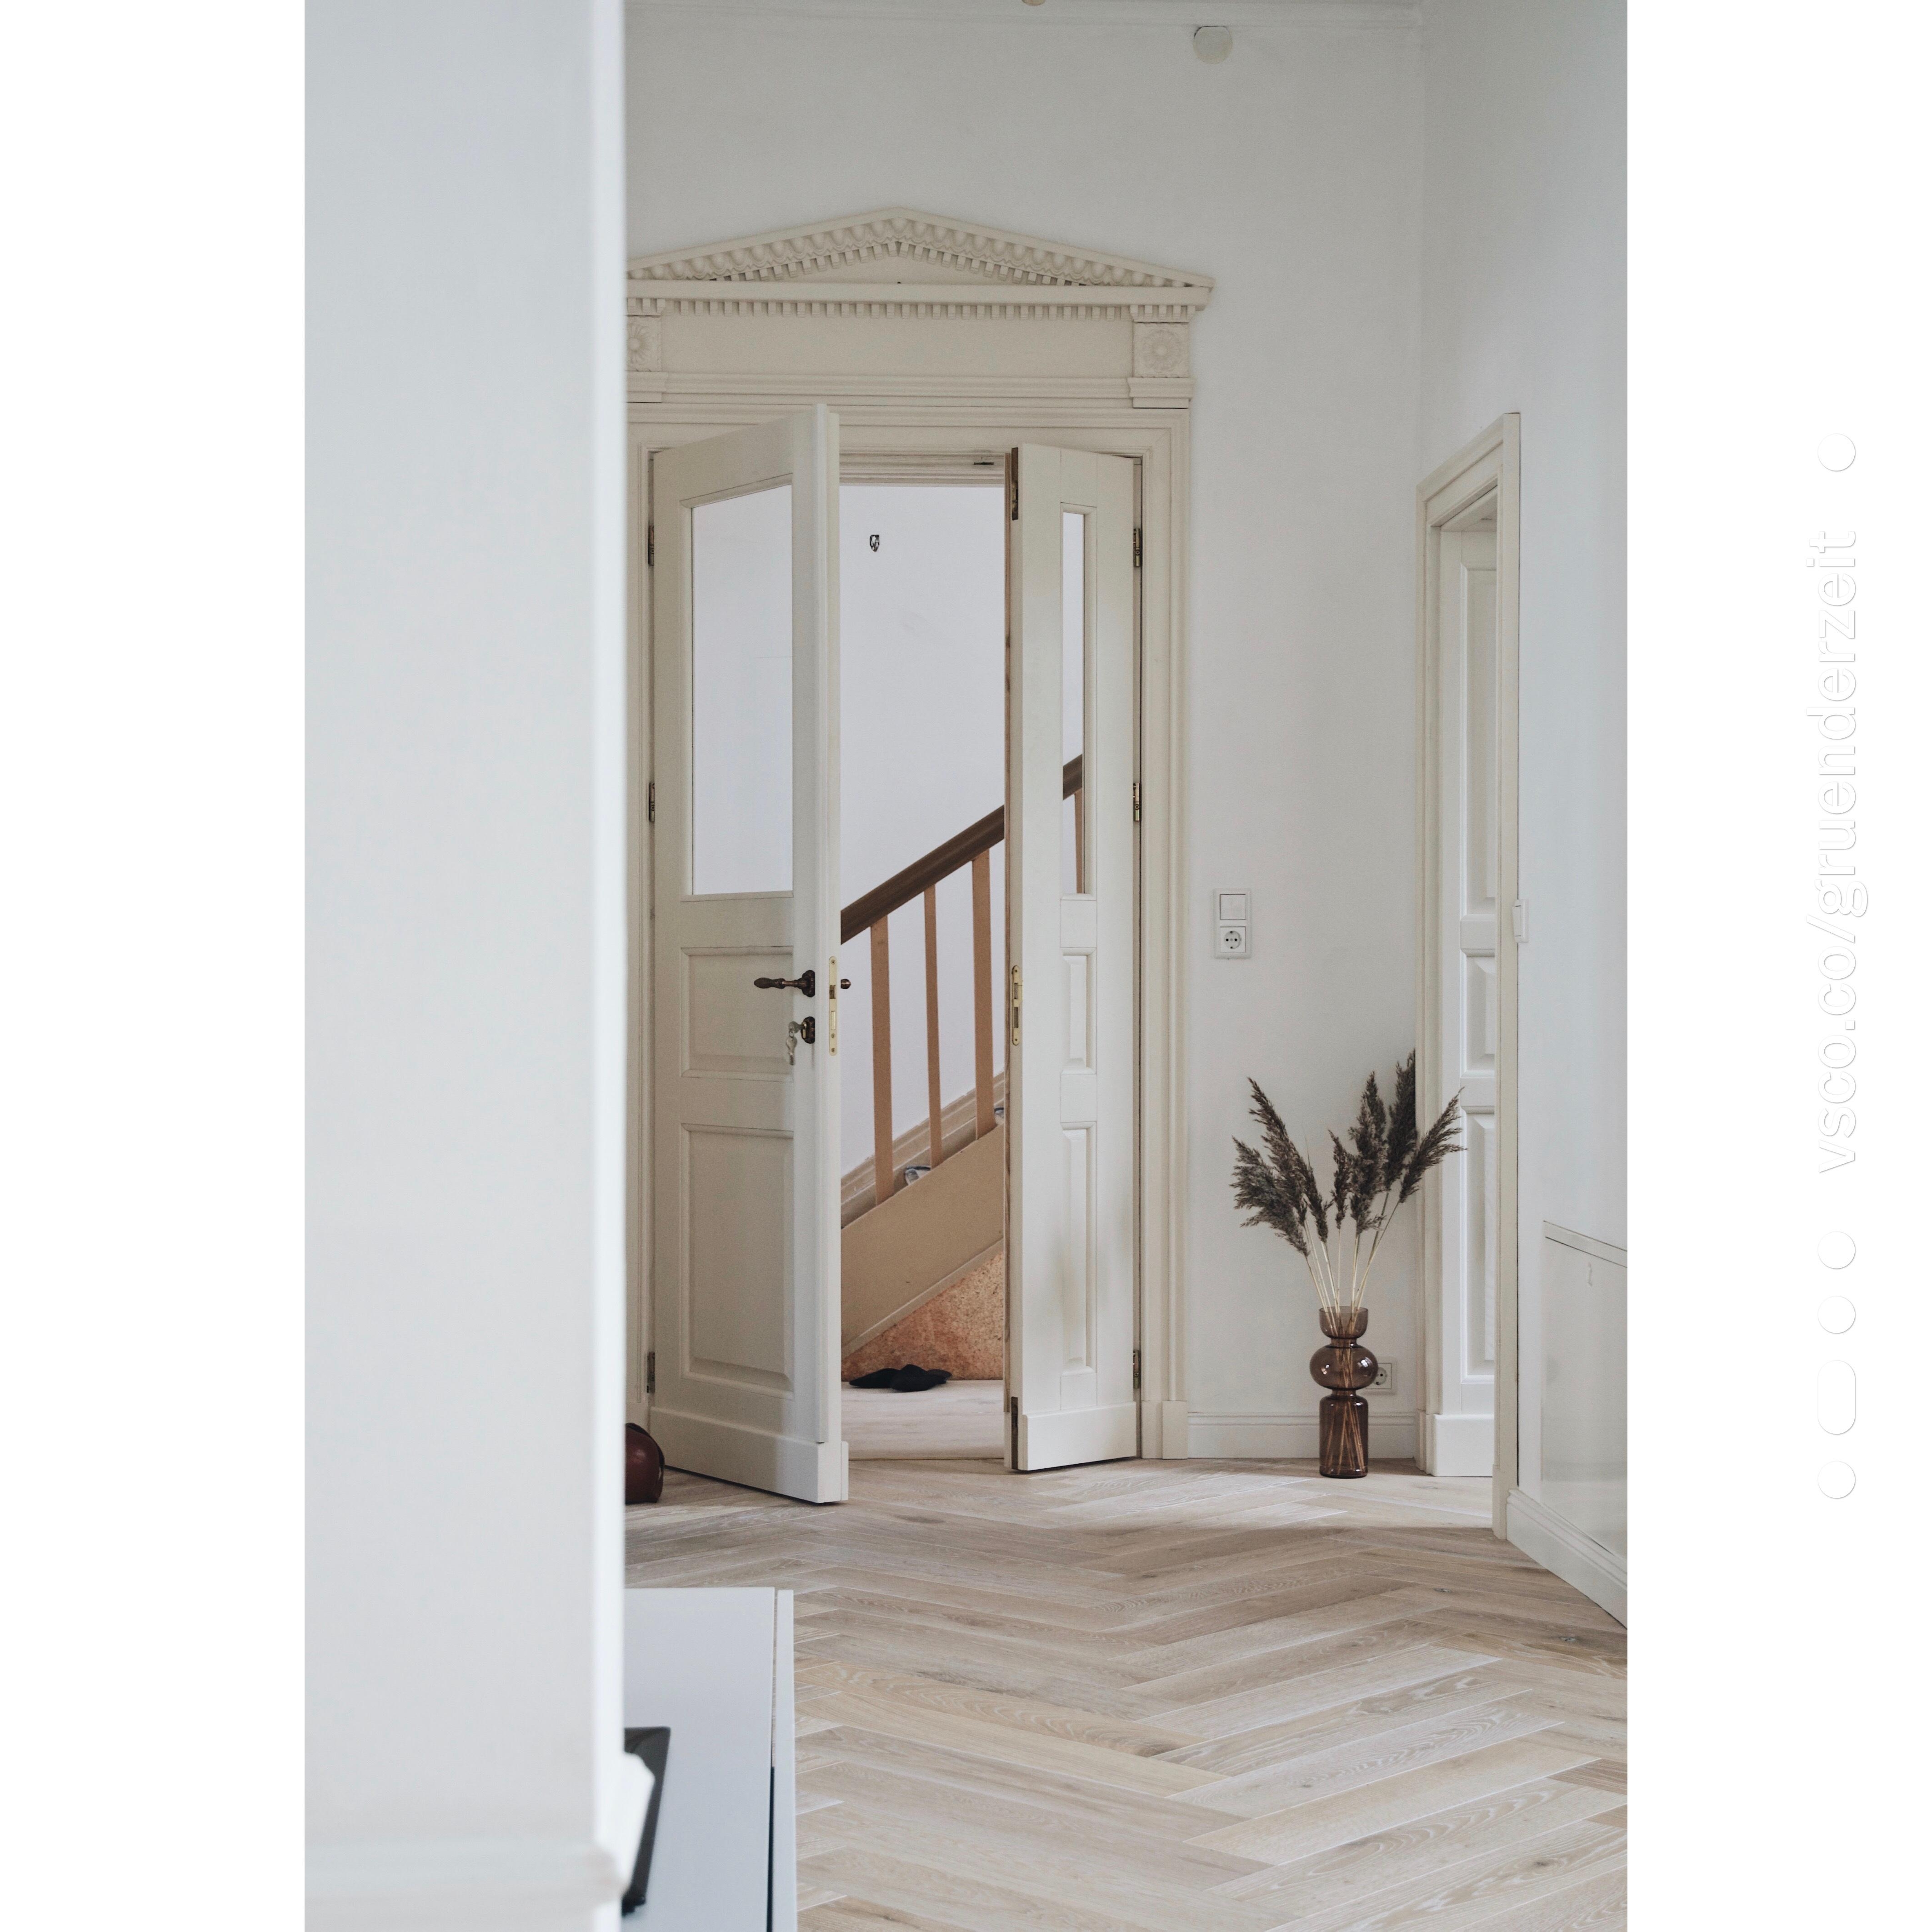 Hereinspaziert, in unser Haus :) diese #Tür verbindet den #Flur mit dem #Wohnbereich. Alles passend zum #altbau 